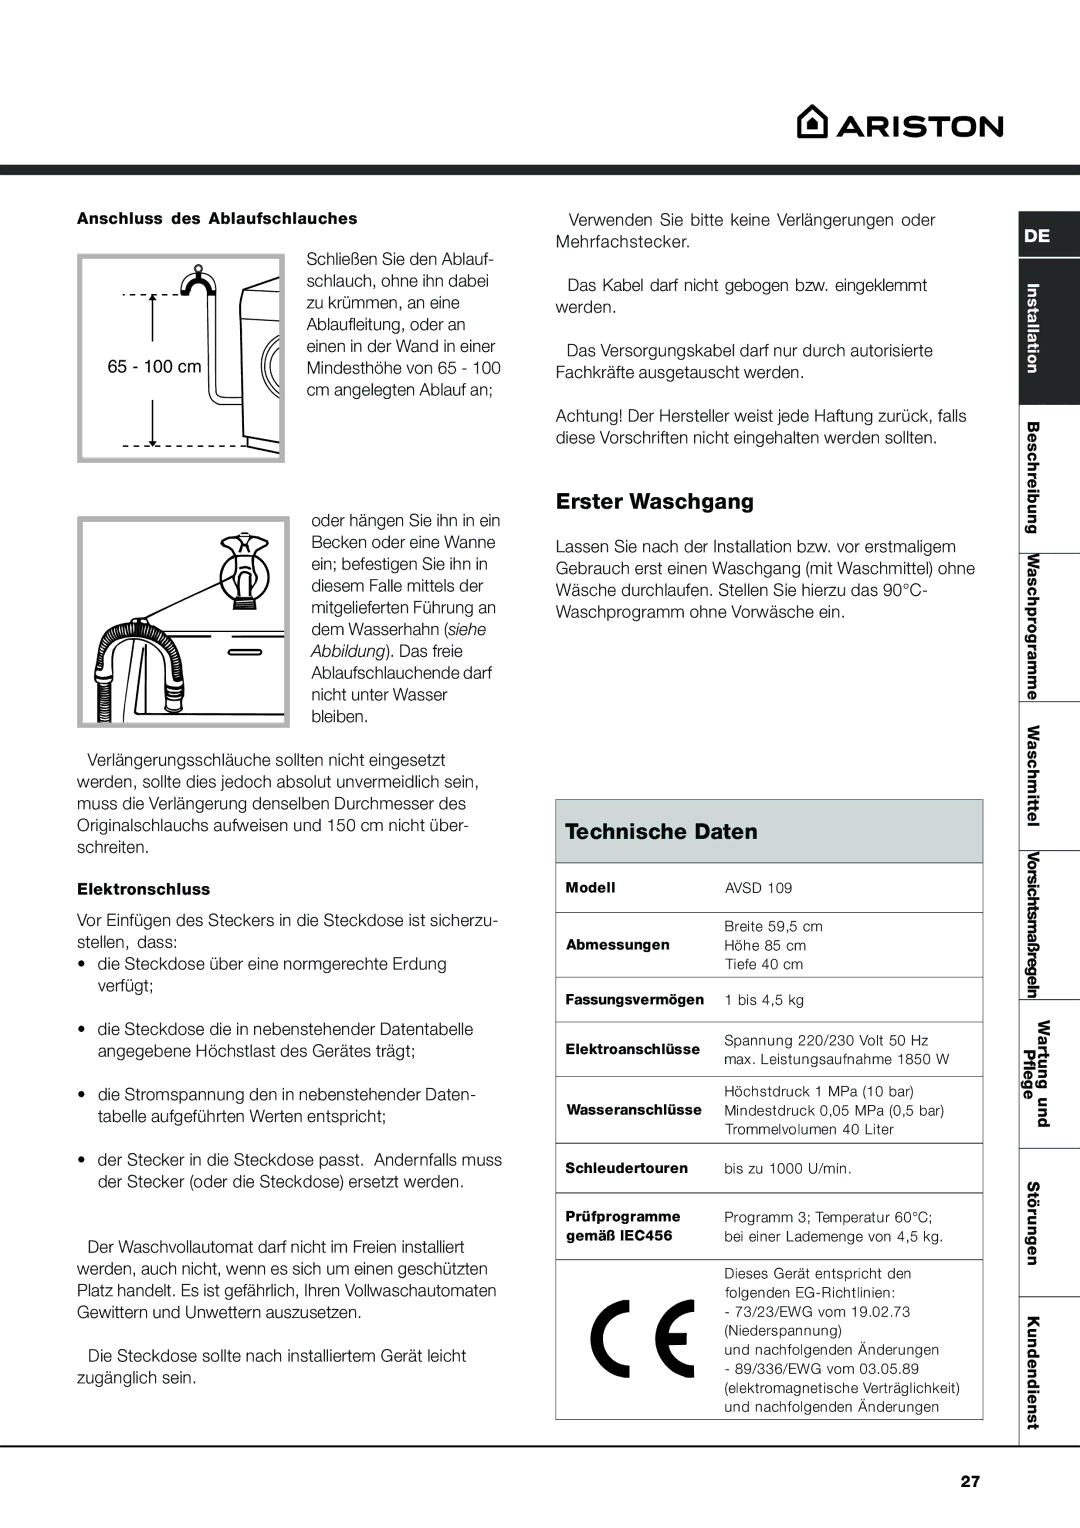 Ariston AVSD 109 manual Erster Waschgang, Technische Daten 